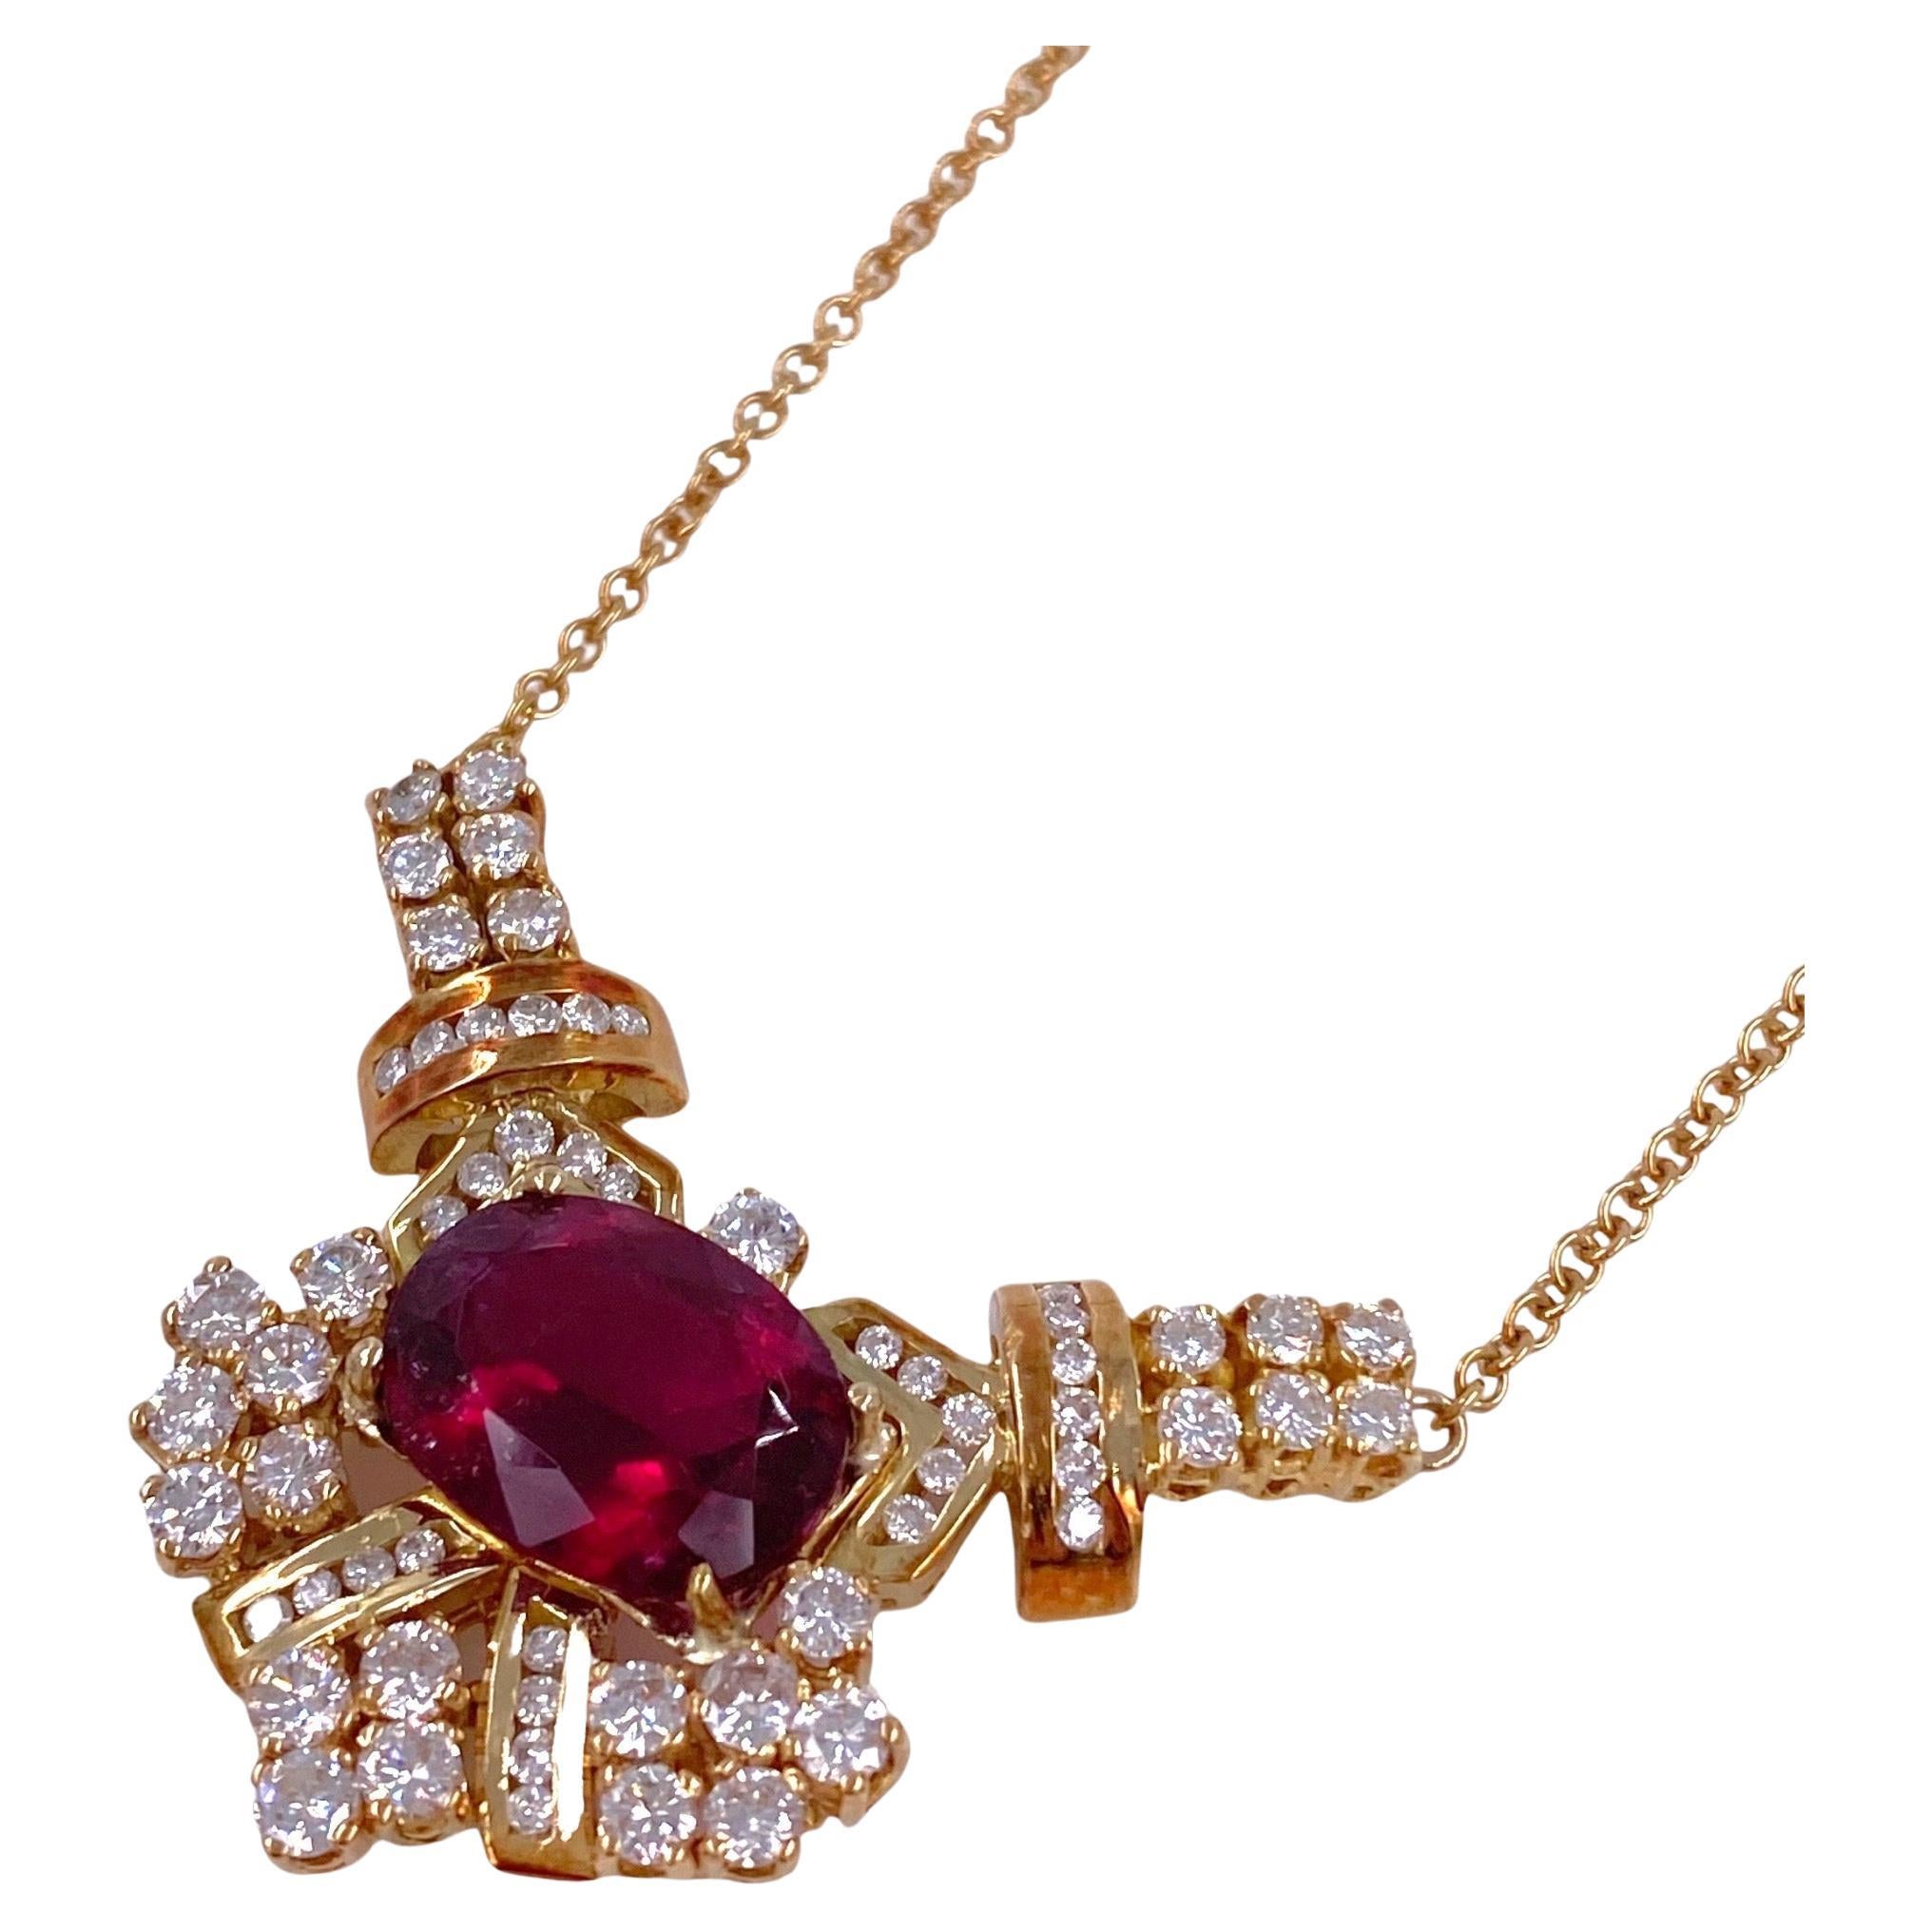 Halskette aus 18 Karat Gold mit Rubellit, Turmalin und Diamant